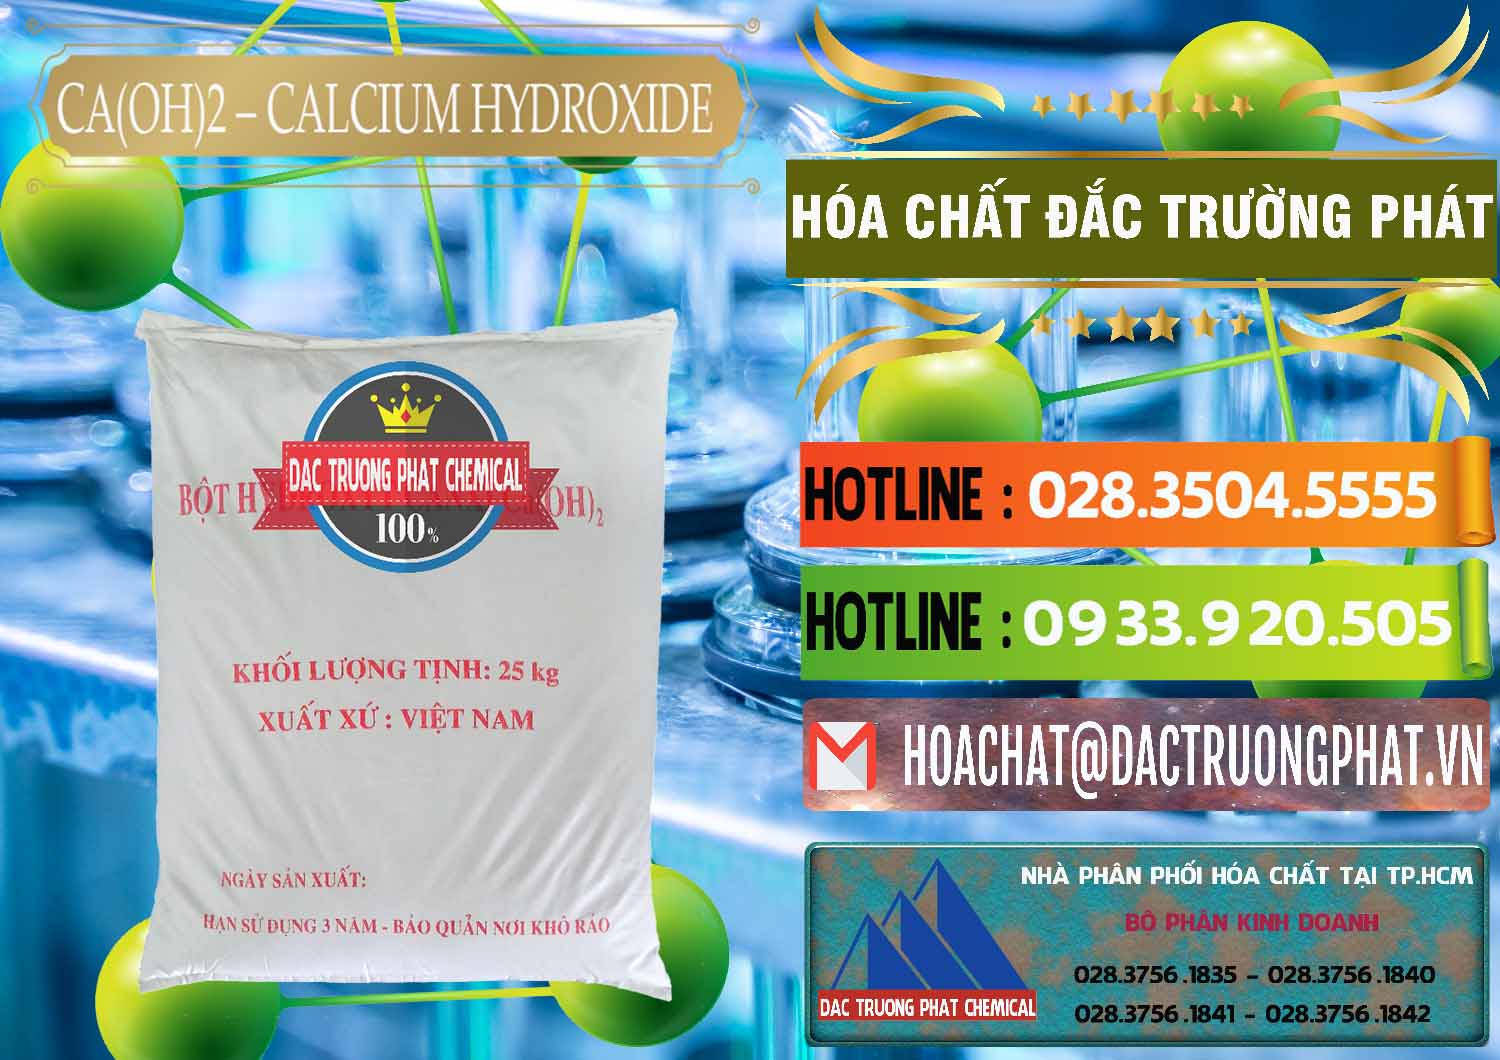 Cty kinh doanh & cung cấp Ca(OH)2 - Calcium Hydroxide Việt Nam - 0186 - Nơi chuyên cung cấp ( kinh doanh ) hóa chất tại TP.HCM - cungcaphoachat.com.vn